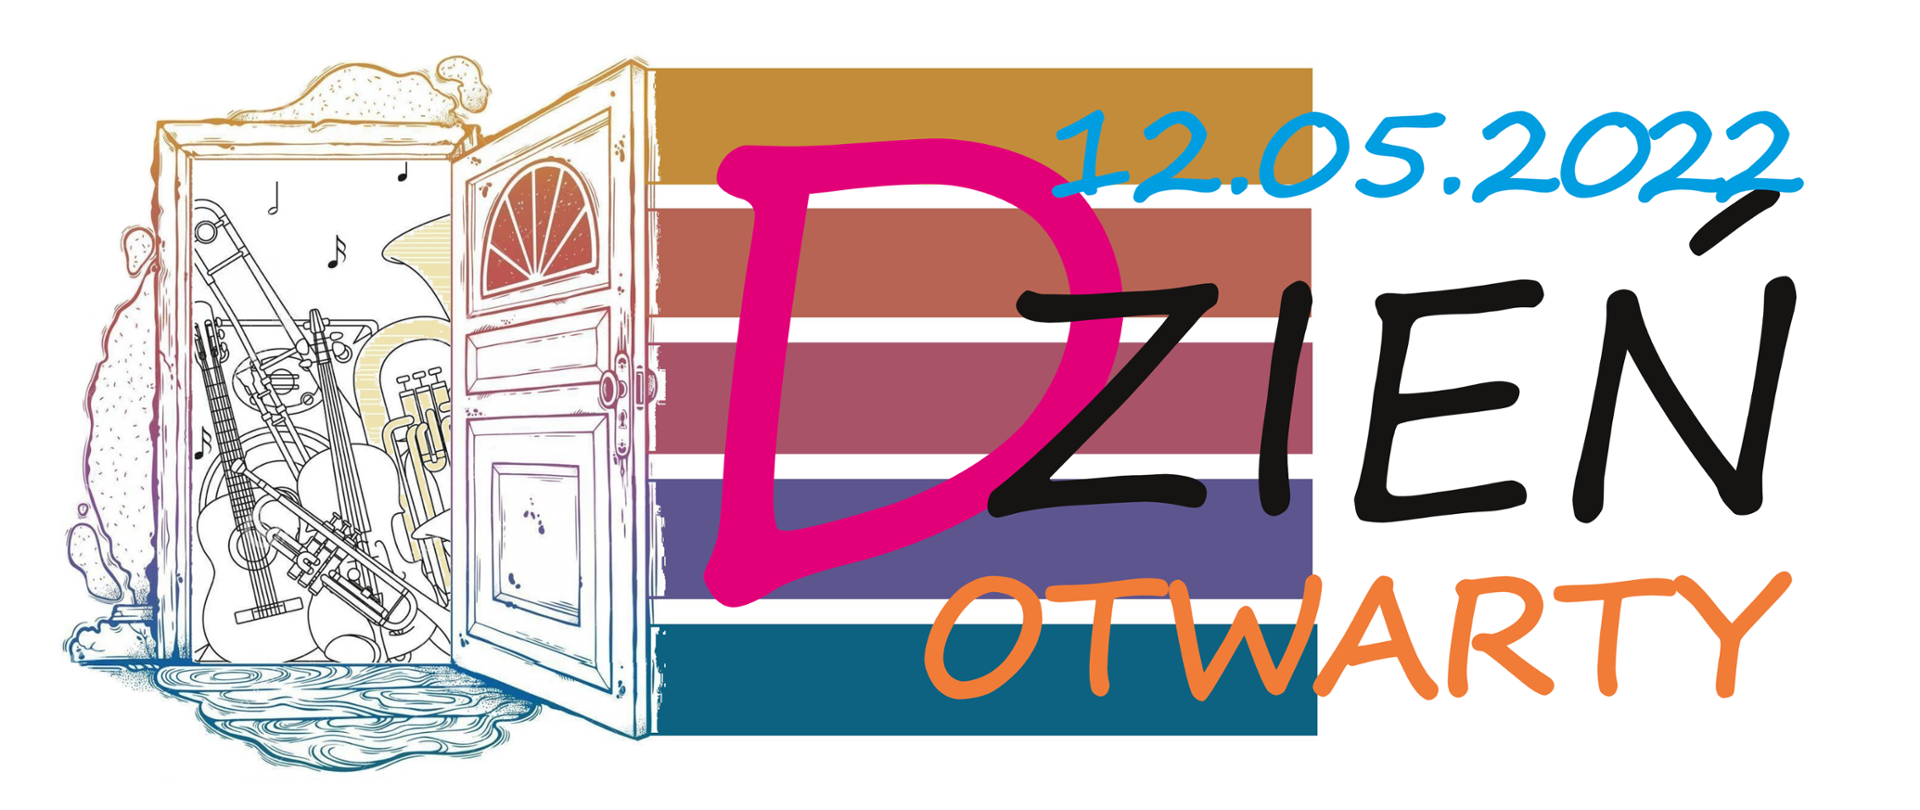 Kolorowa grafika zawierająca otwarte drzwi, za którymi widać różne instrumenty oraz kolorowy napis DZIEŃ OTWARTY 12.05.2022